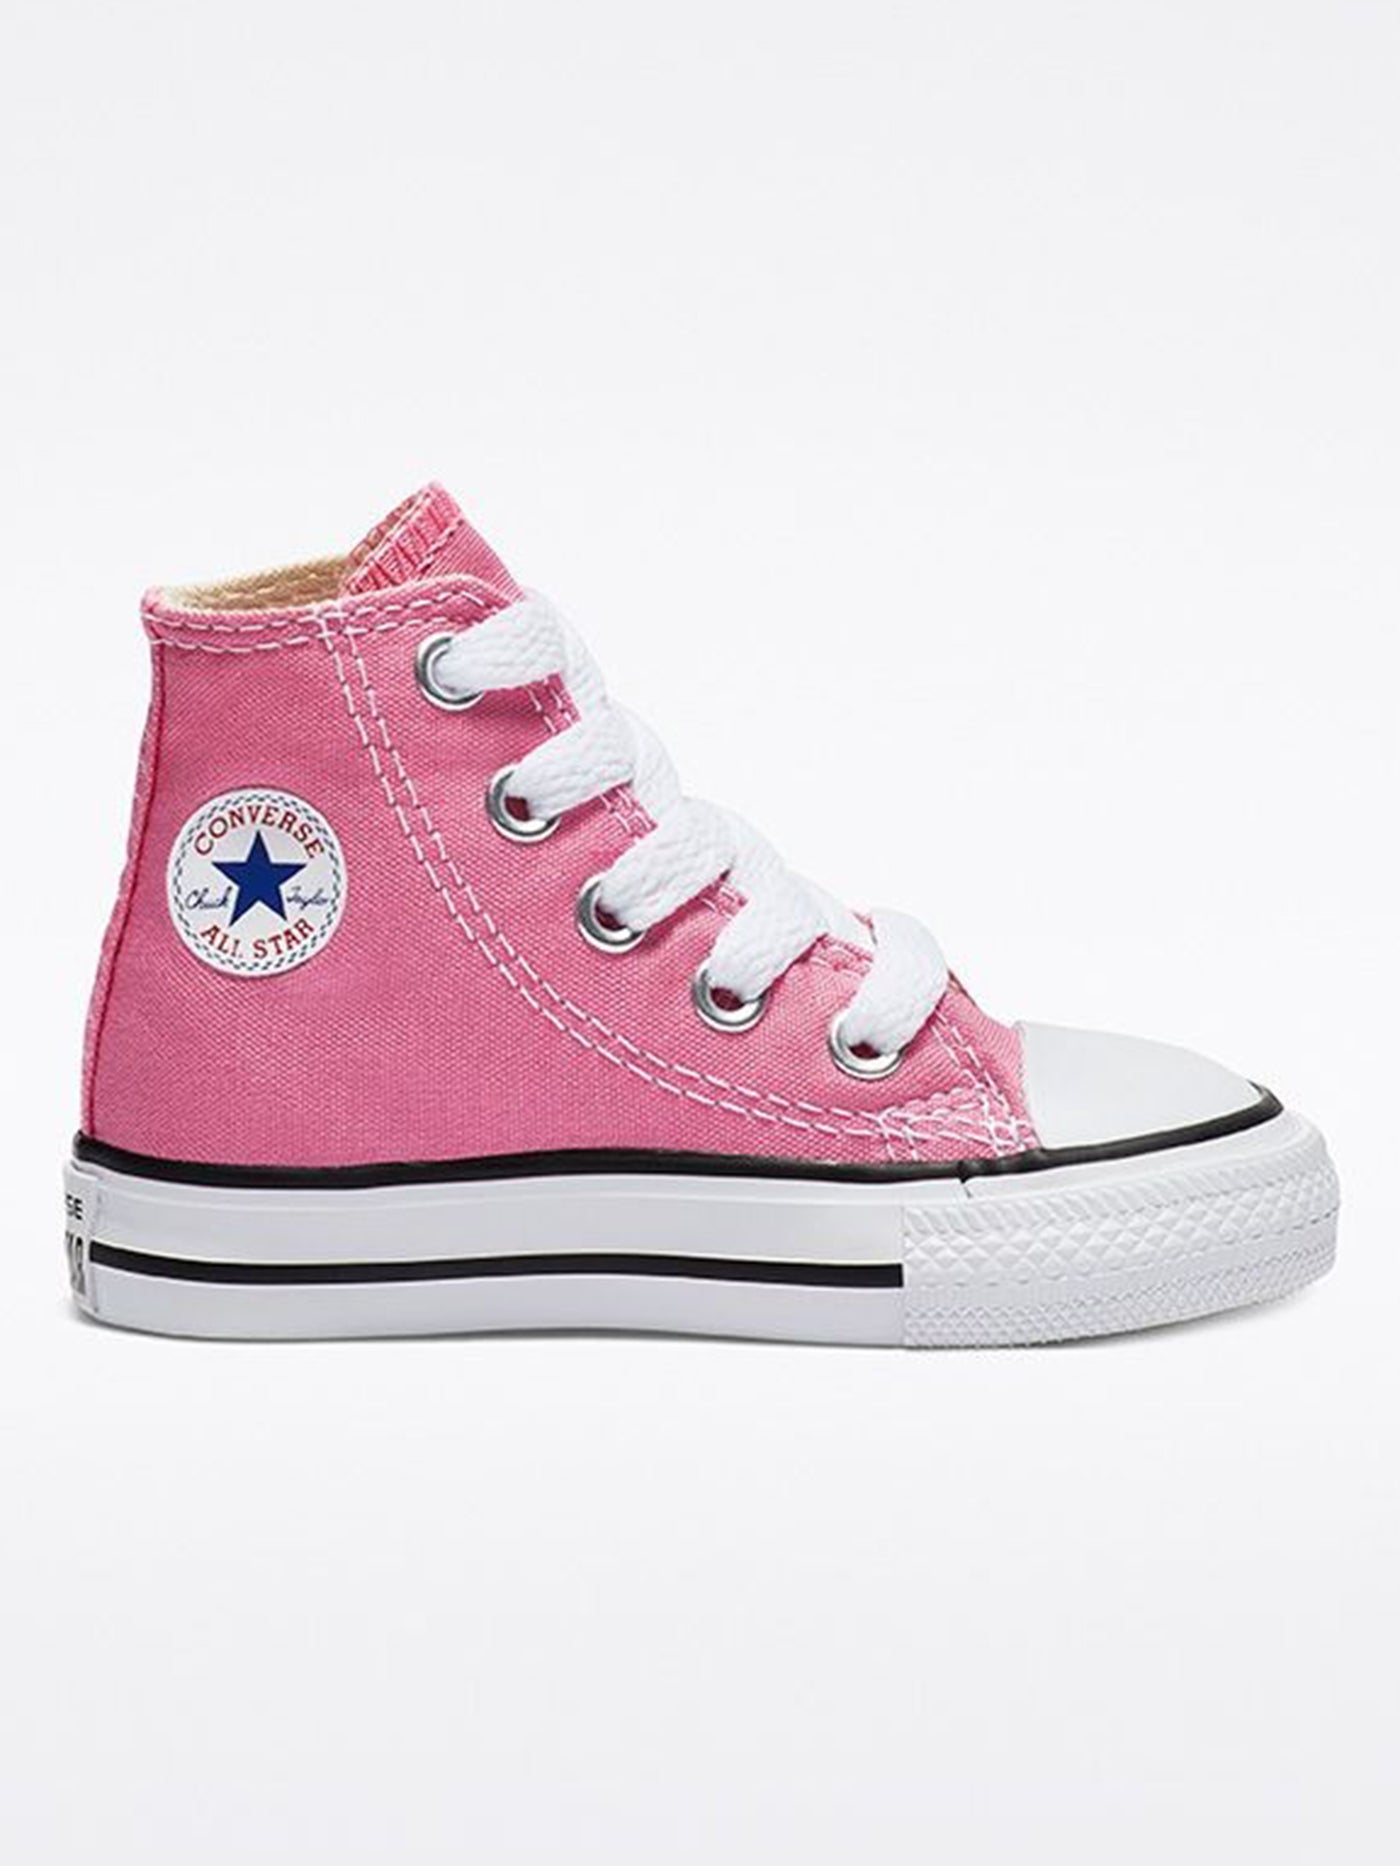 Converse Classic Chuck Hi Pink Shoes